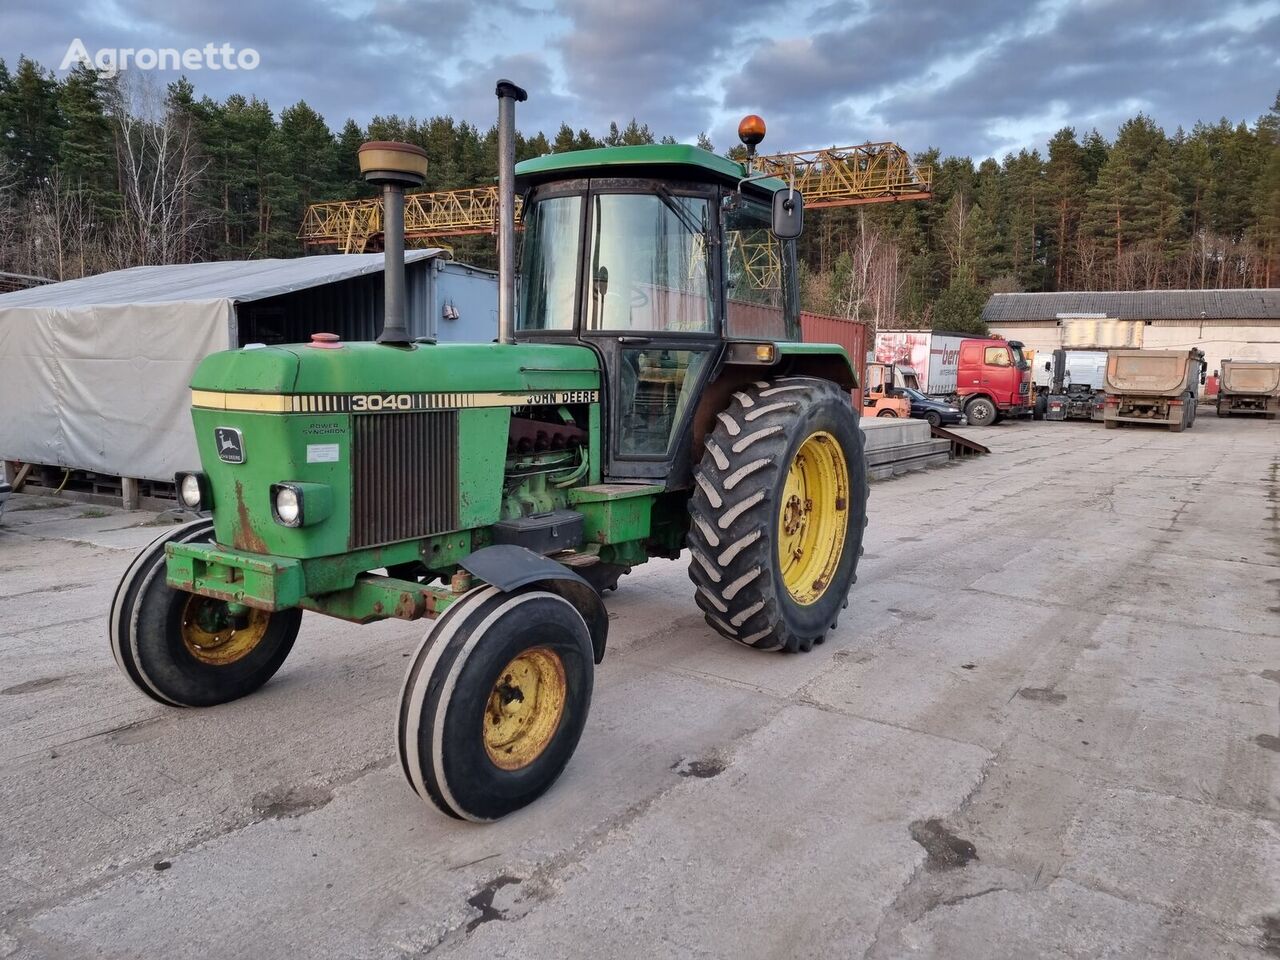 John Deere 3040 wheel tractor